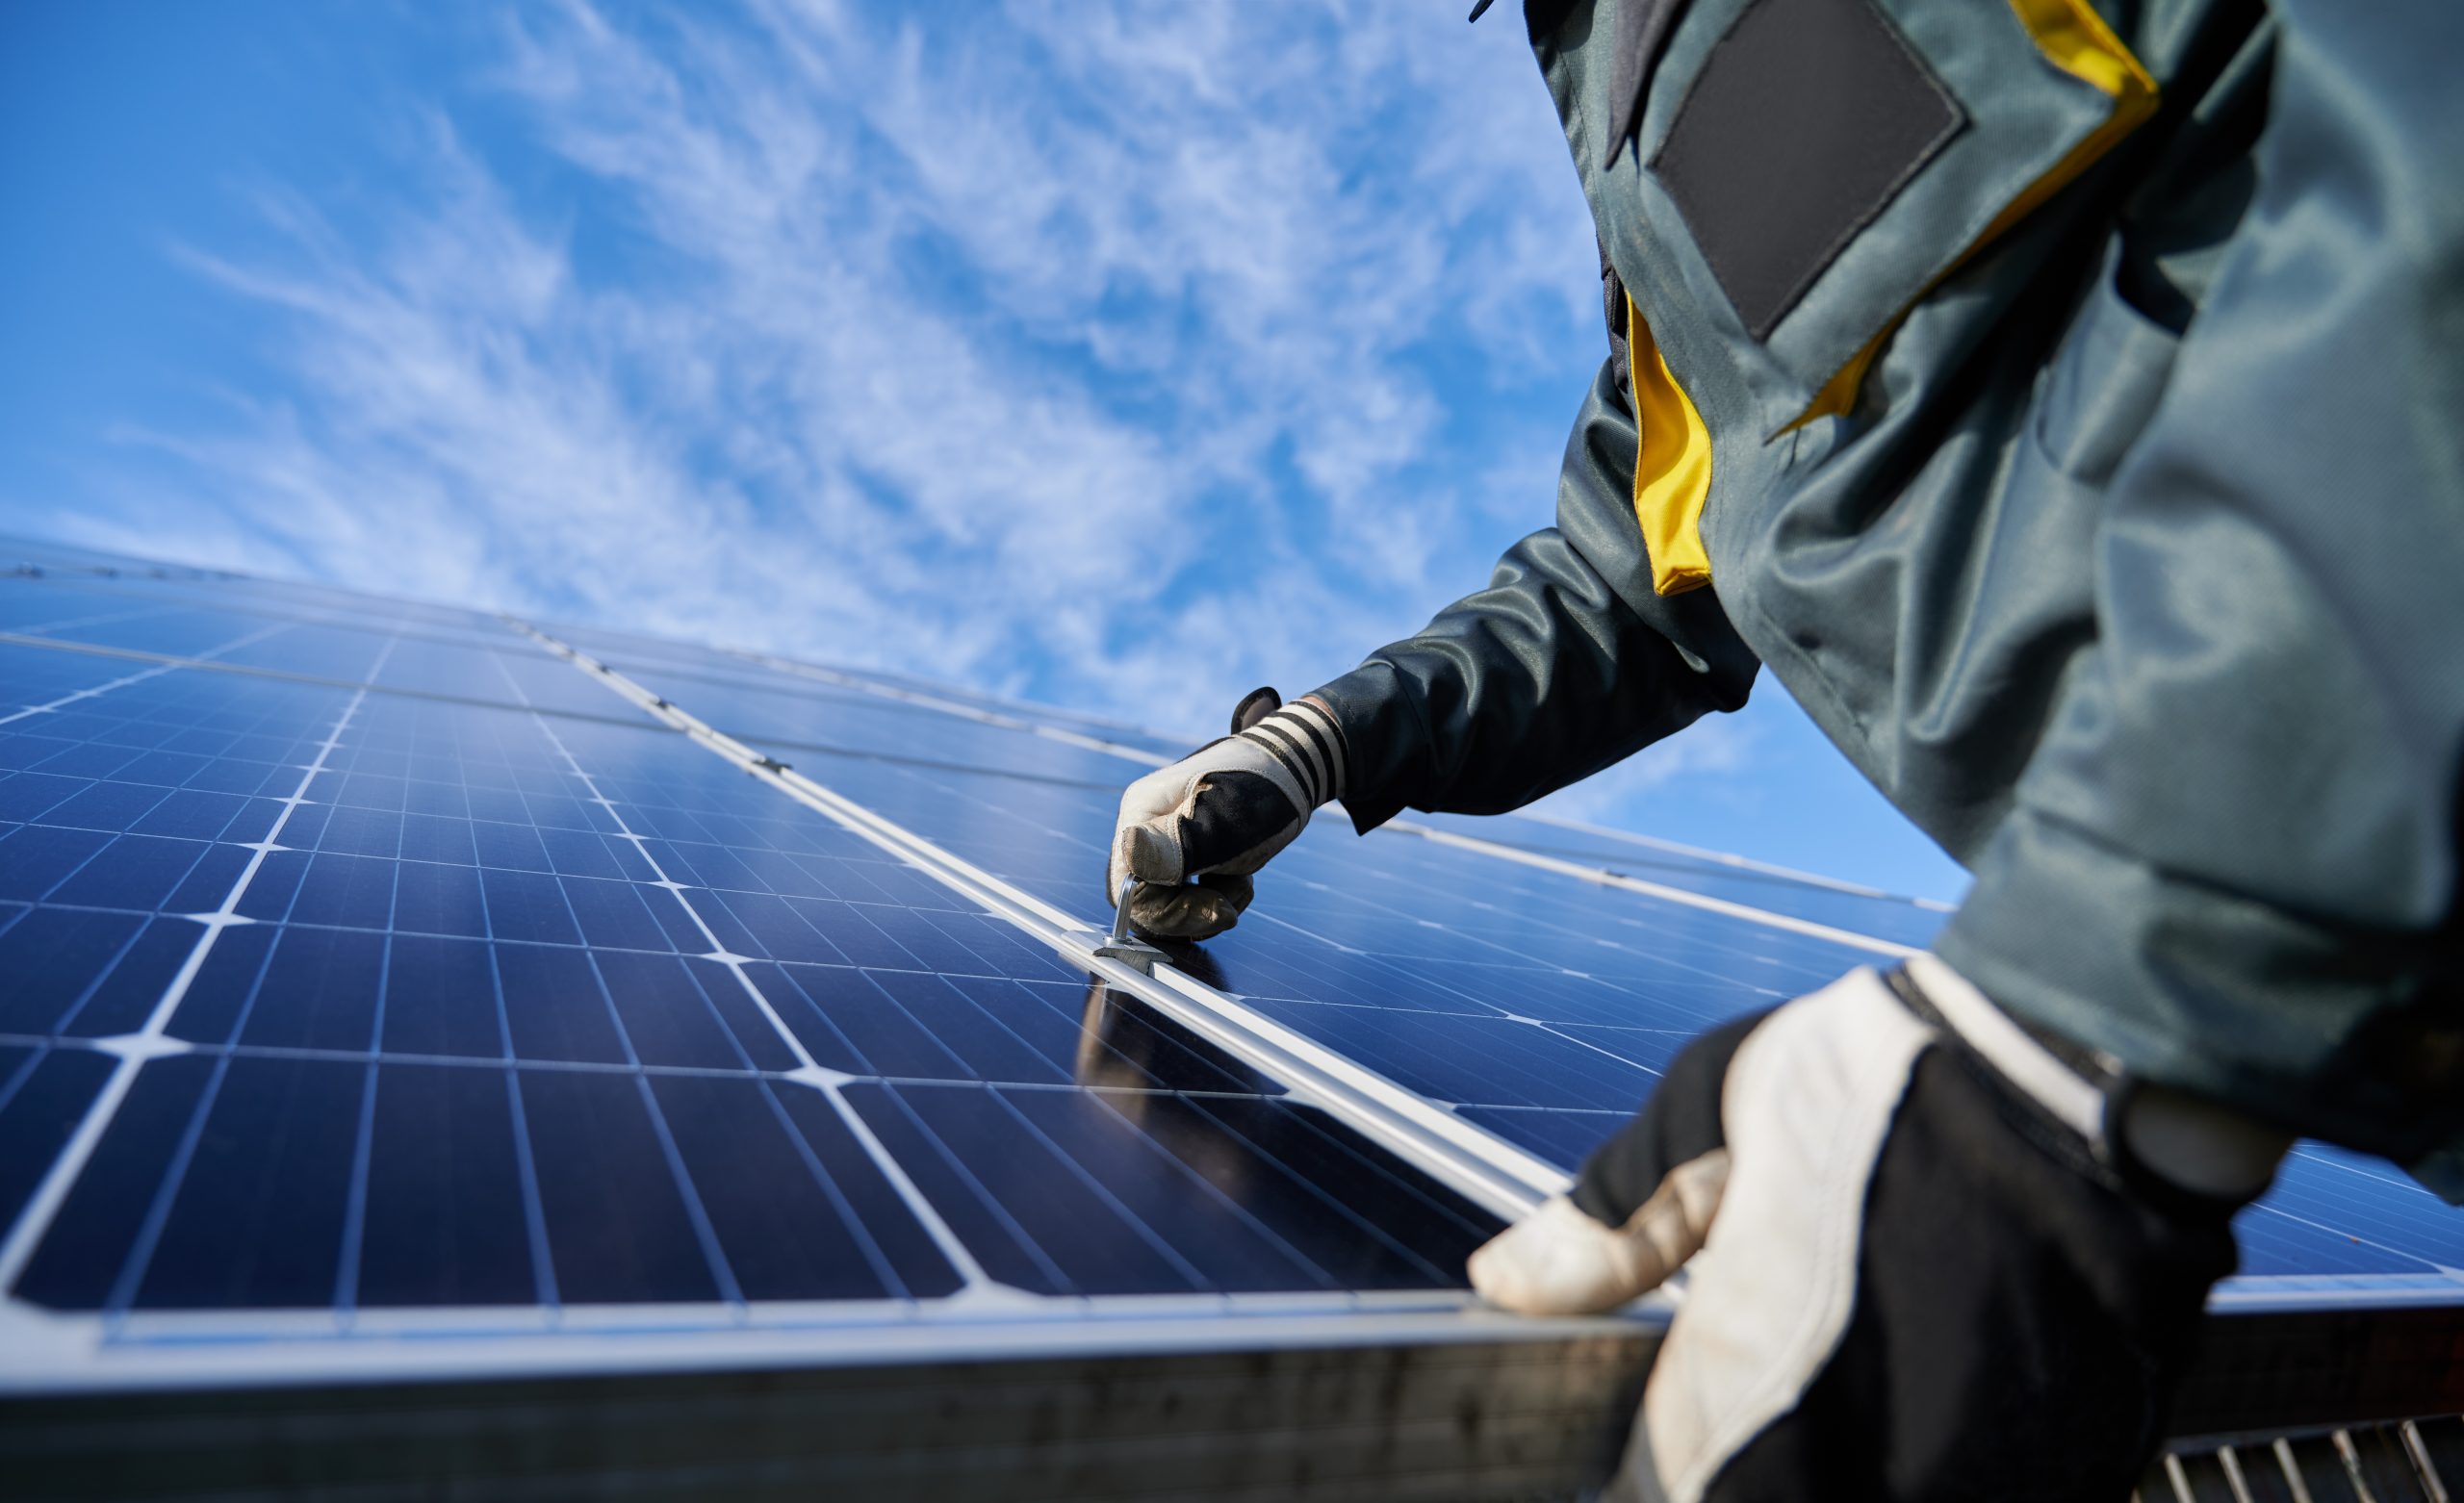 Progeco NeXT acquisice rilevante contratto di Site Management in ambito fotovoltaico.